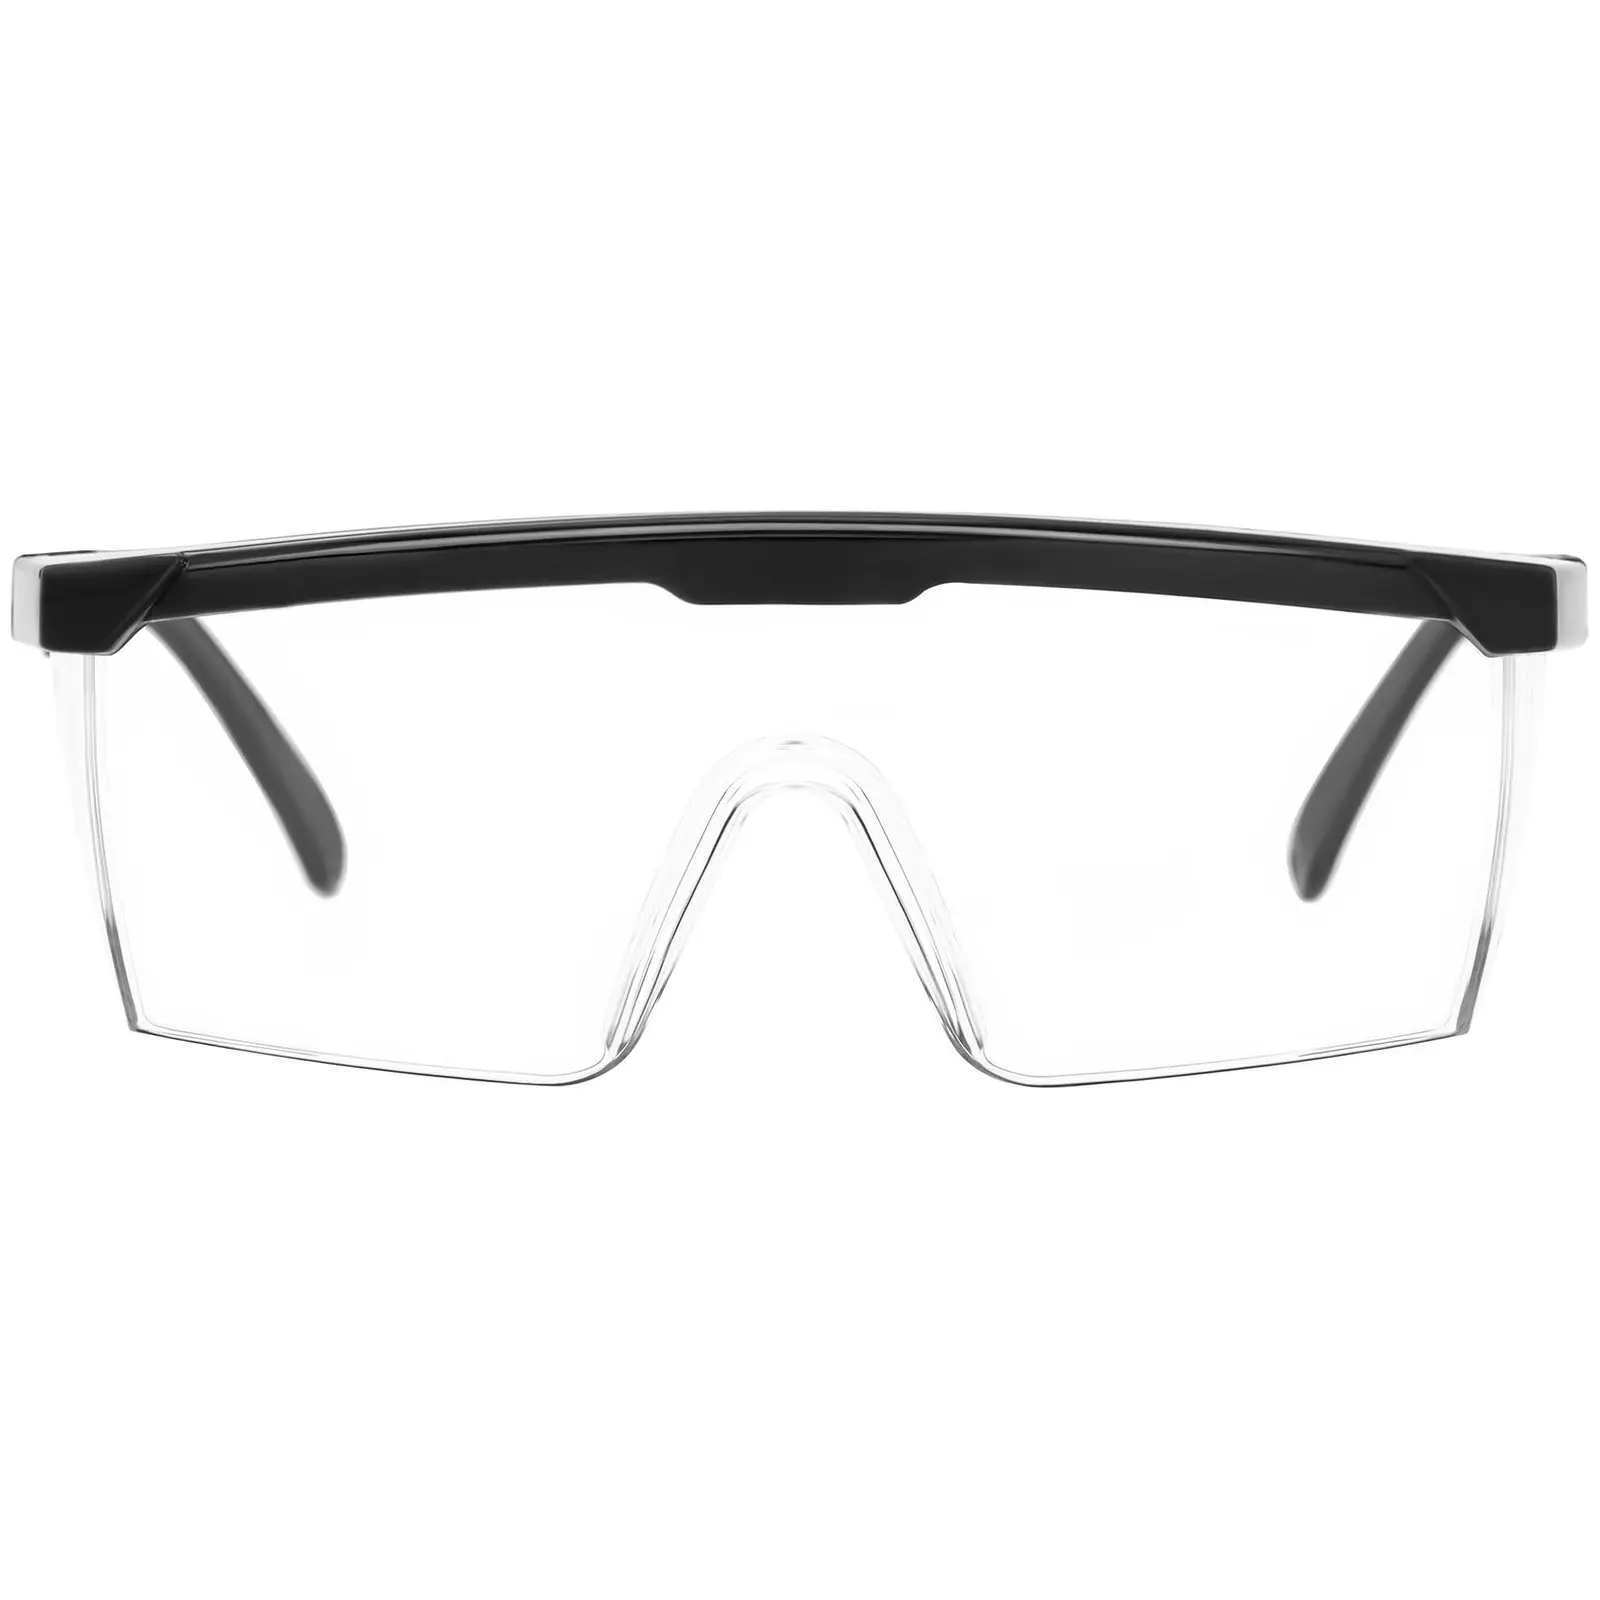 Beskyttelsesbriller - 15 stk. - klart glas - justerbare